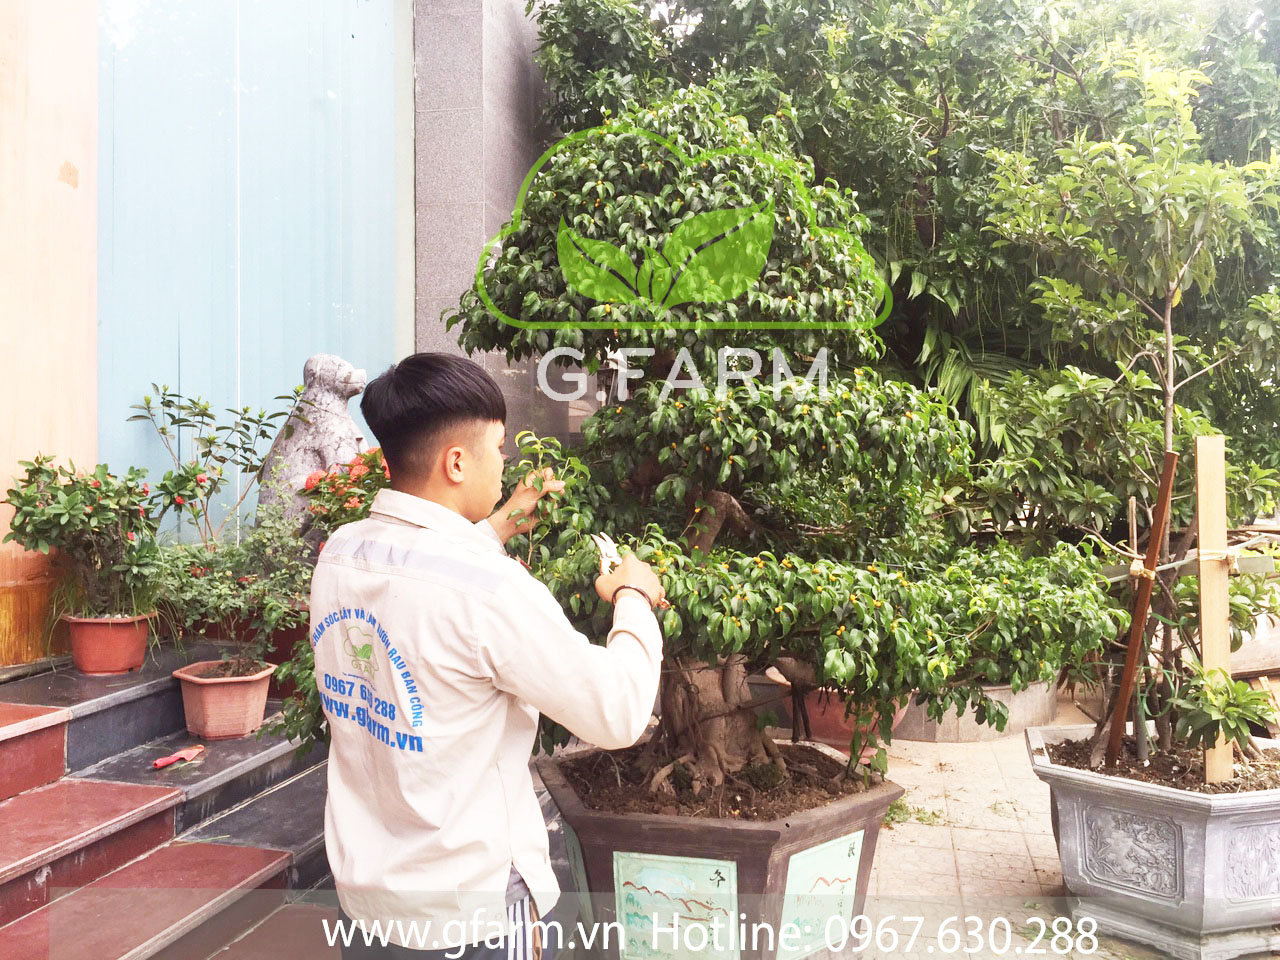 Dịch vụ chăm sóc khôi phục vườn, cứu cây xanh Gfarm